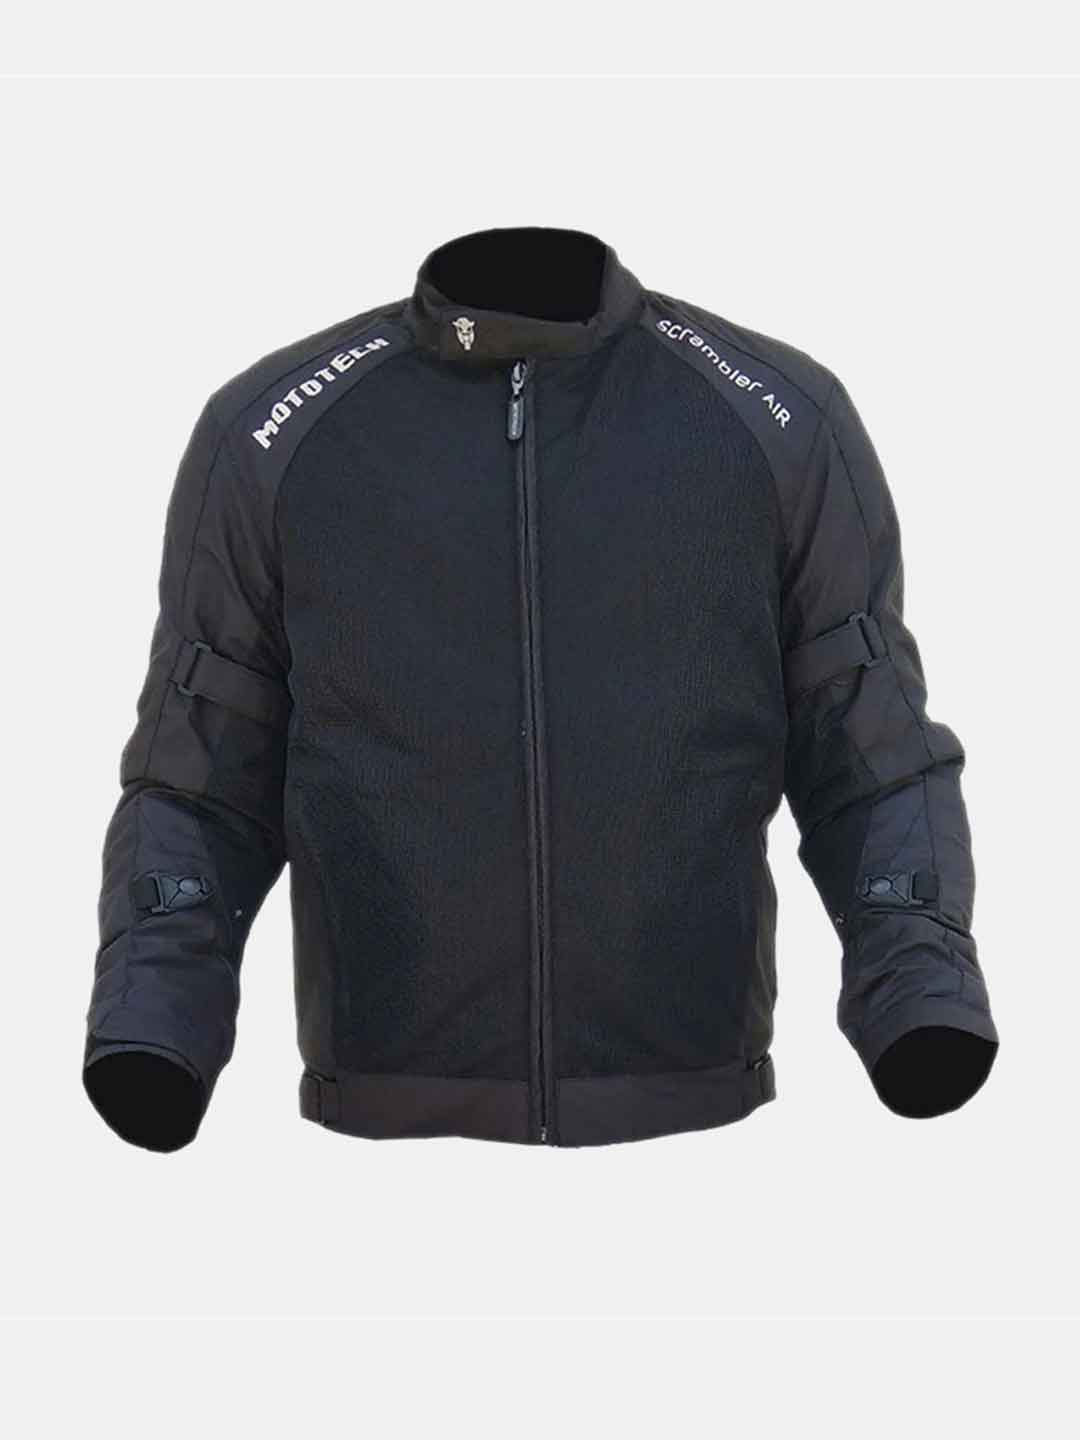 LS2 SEPANG Riding Jacket (Black Dark Grey)– Moto Central